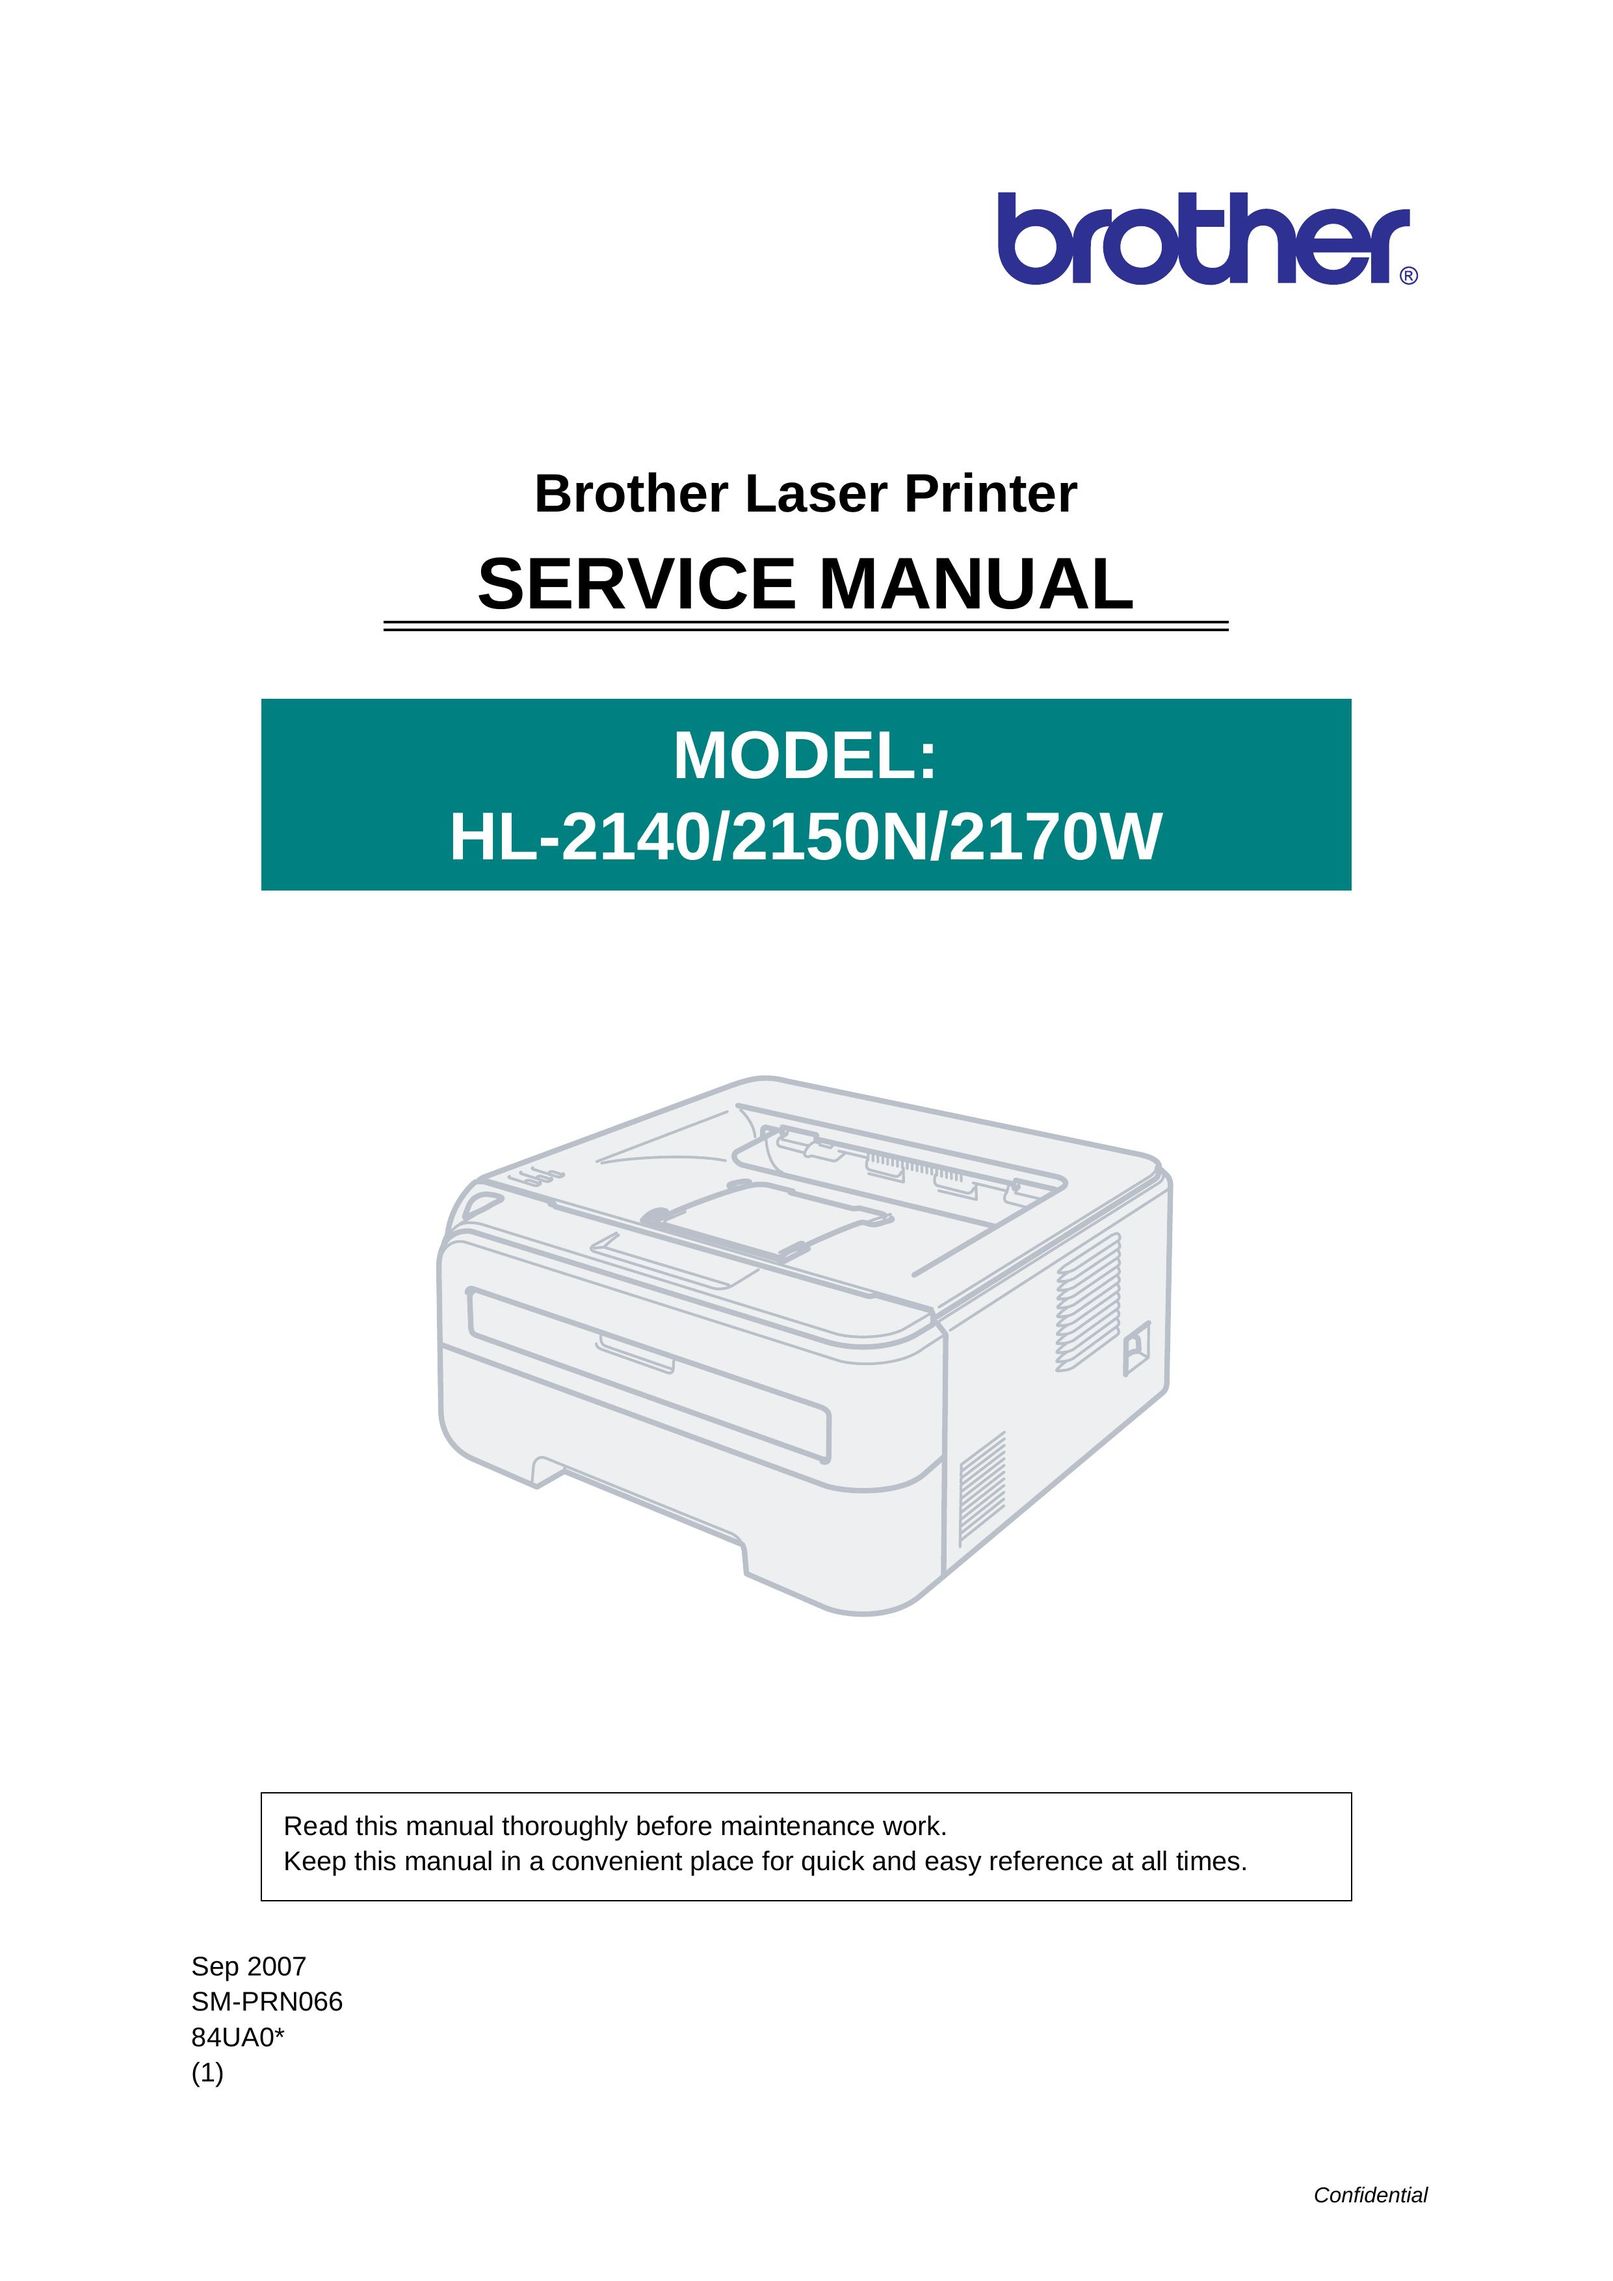 Brother 2150N Printer User Manual